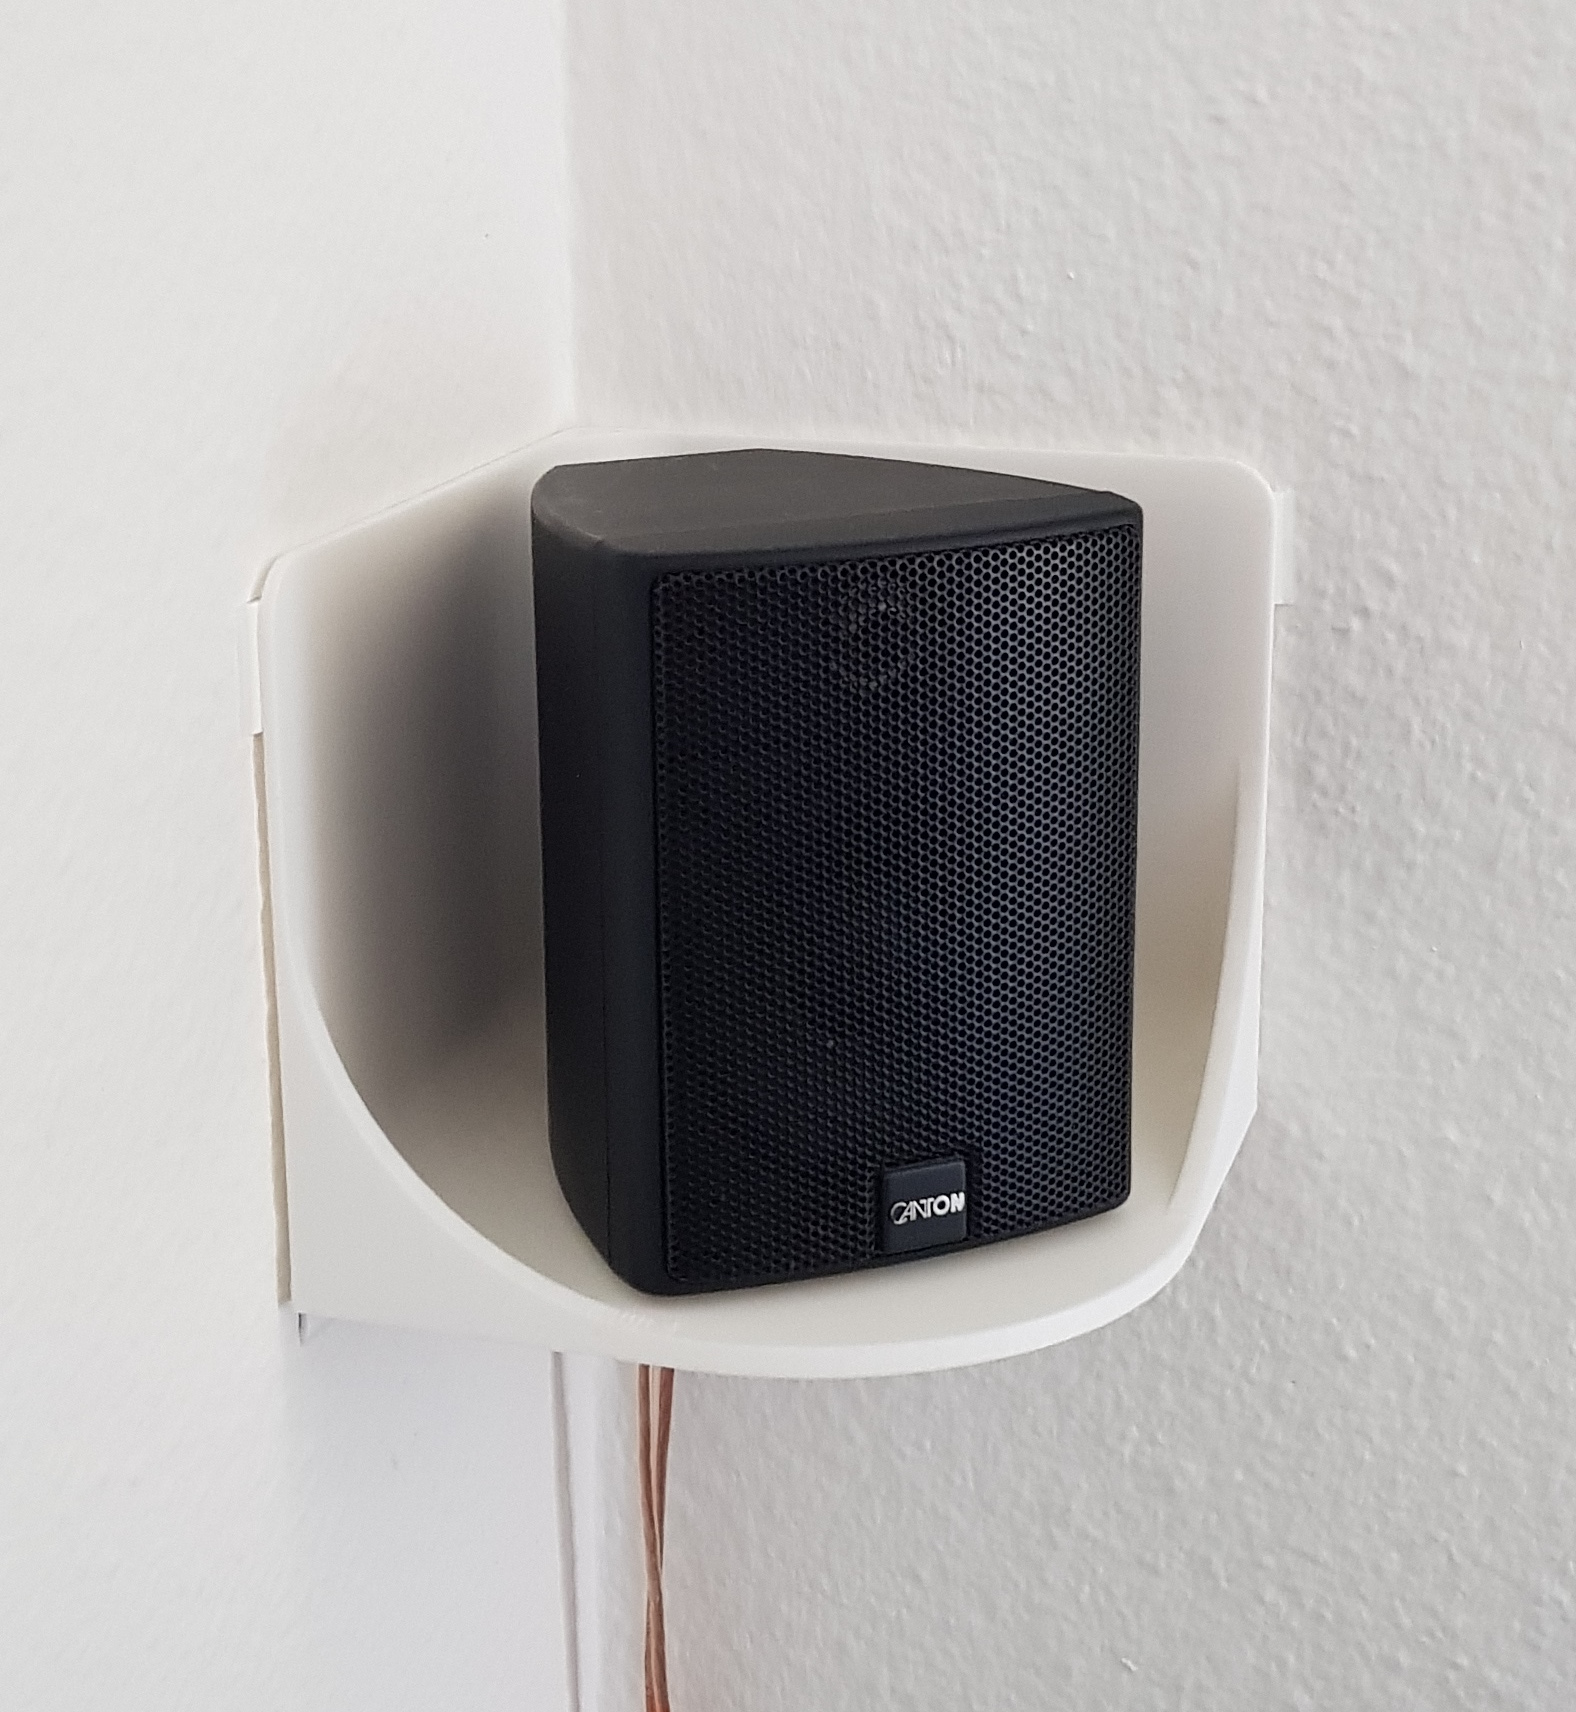 Speaker corner holder / shelf by dah, Download free STL model